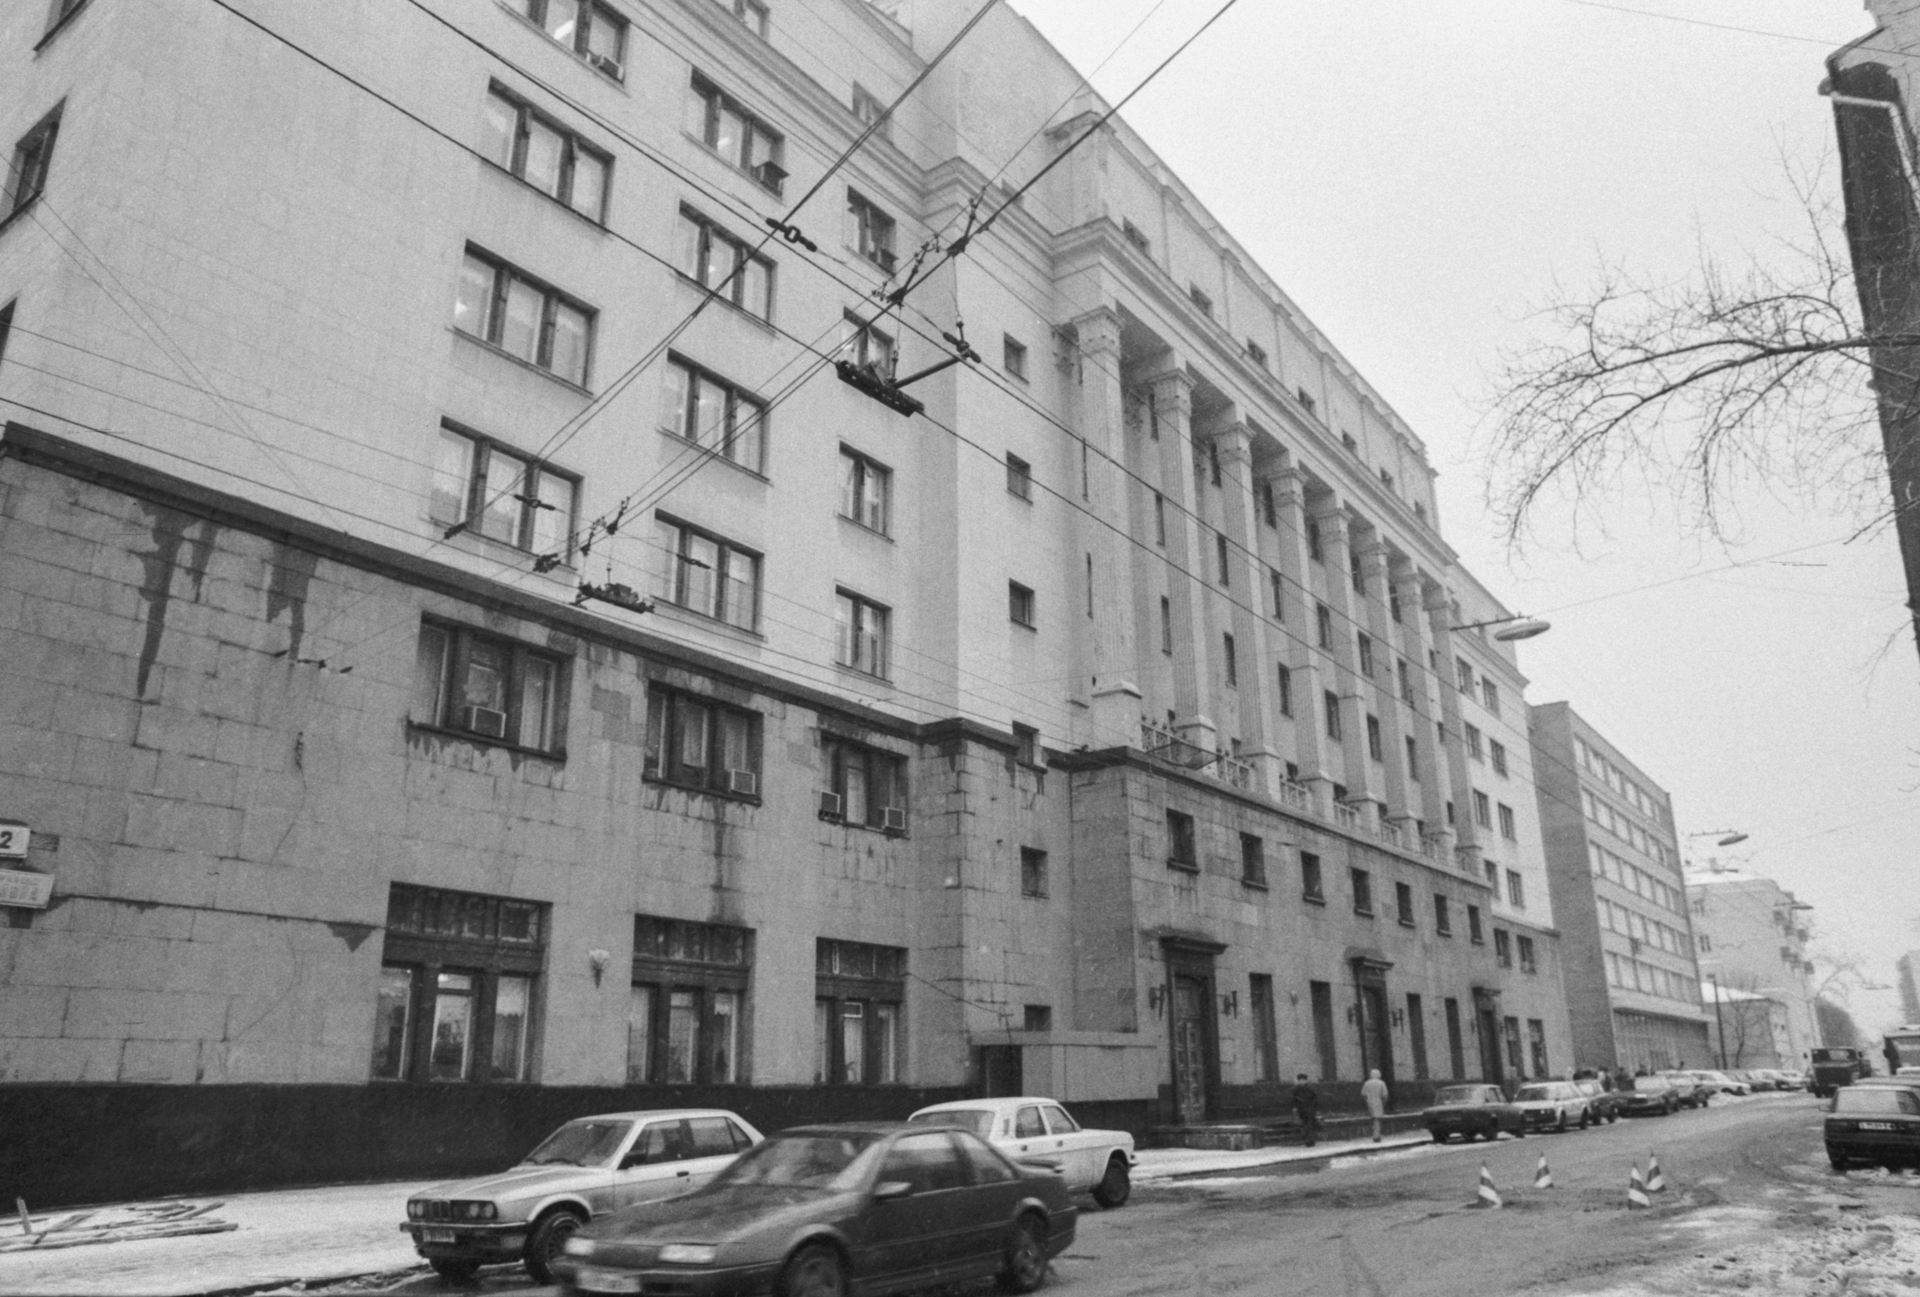 Здание Государственного дома радиовещания и звукозаписи на улице Качалова, 24 в котором собран богатейший музыкальный архив.